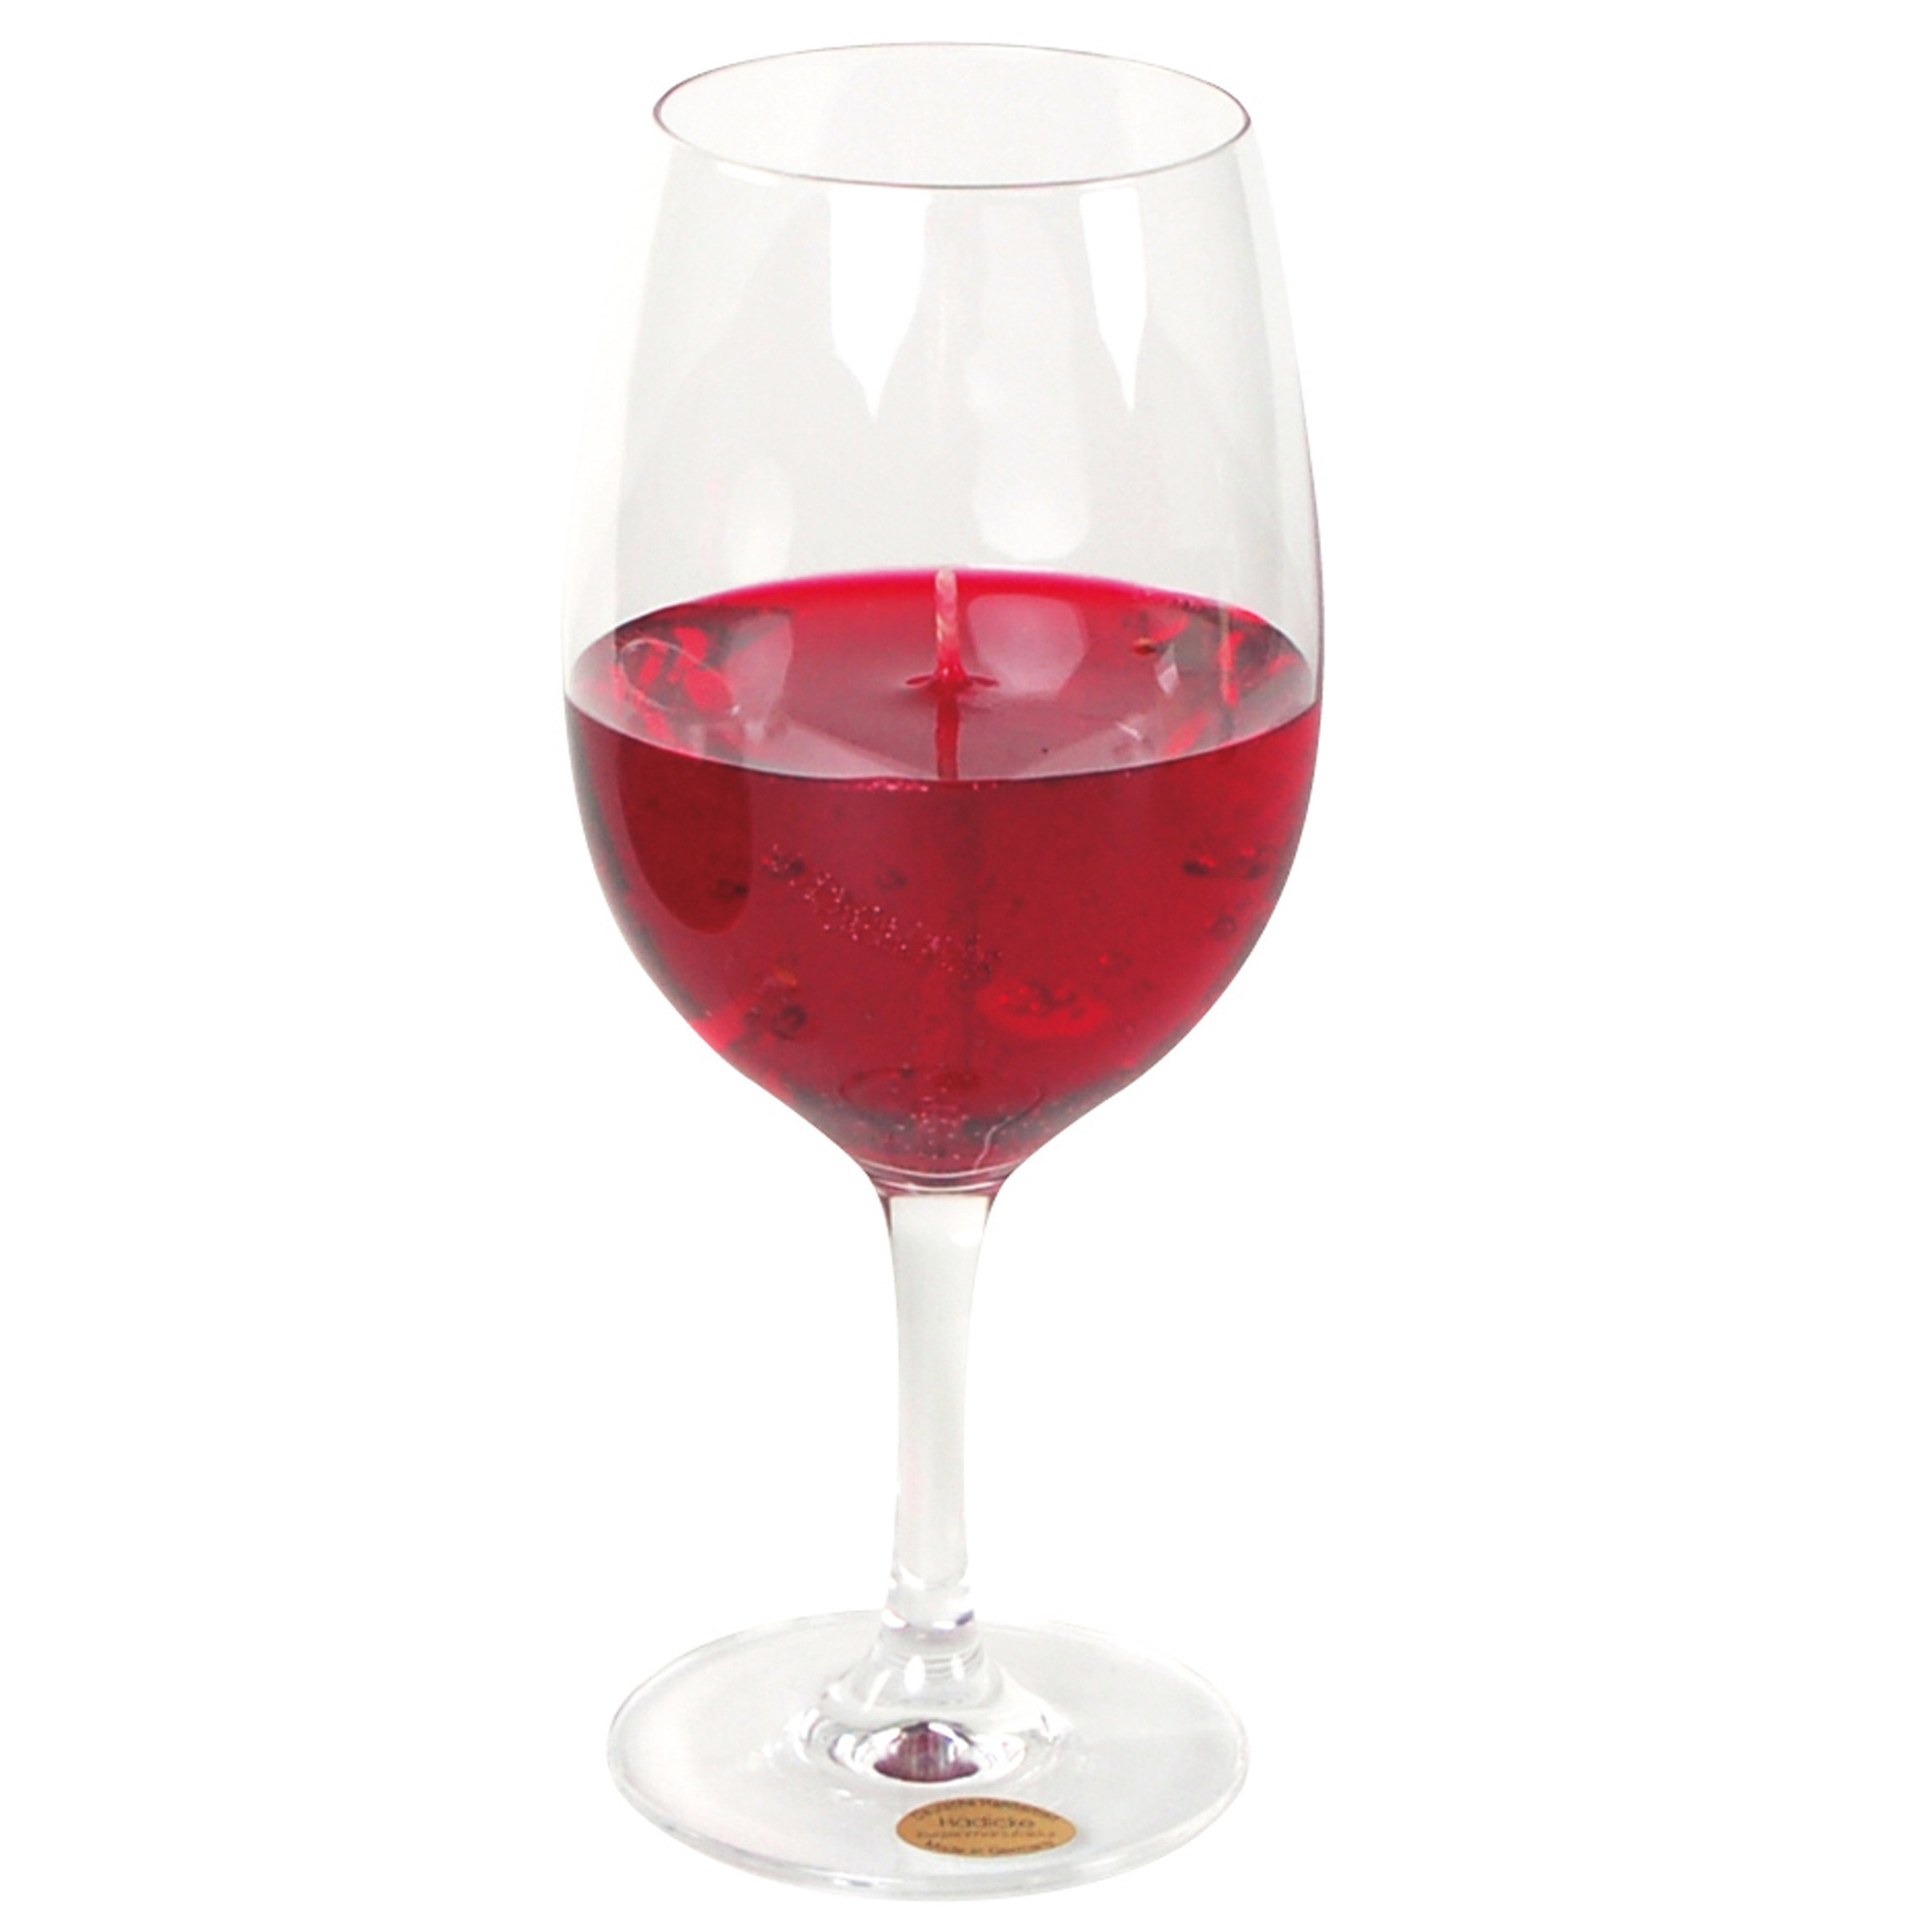 Wijnglas gadget/kado Wijnkaars - geurkaars - H21 cm - rode wijn -